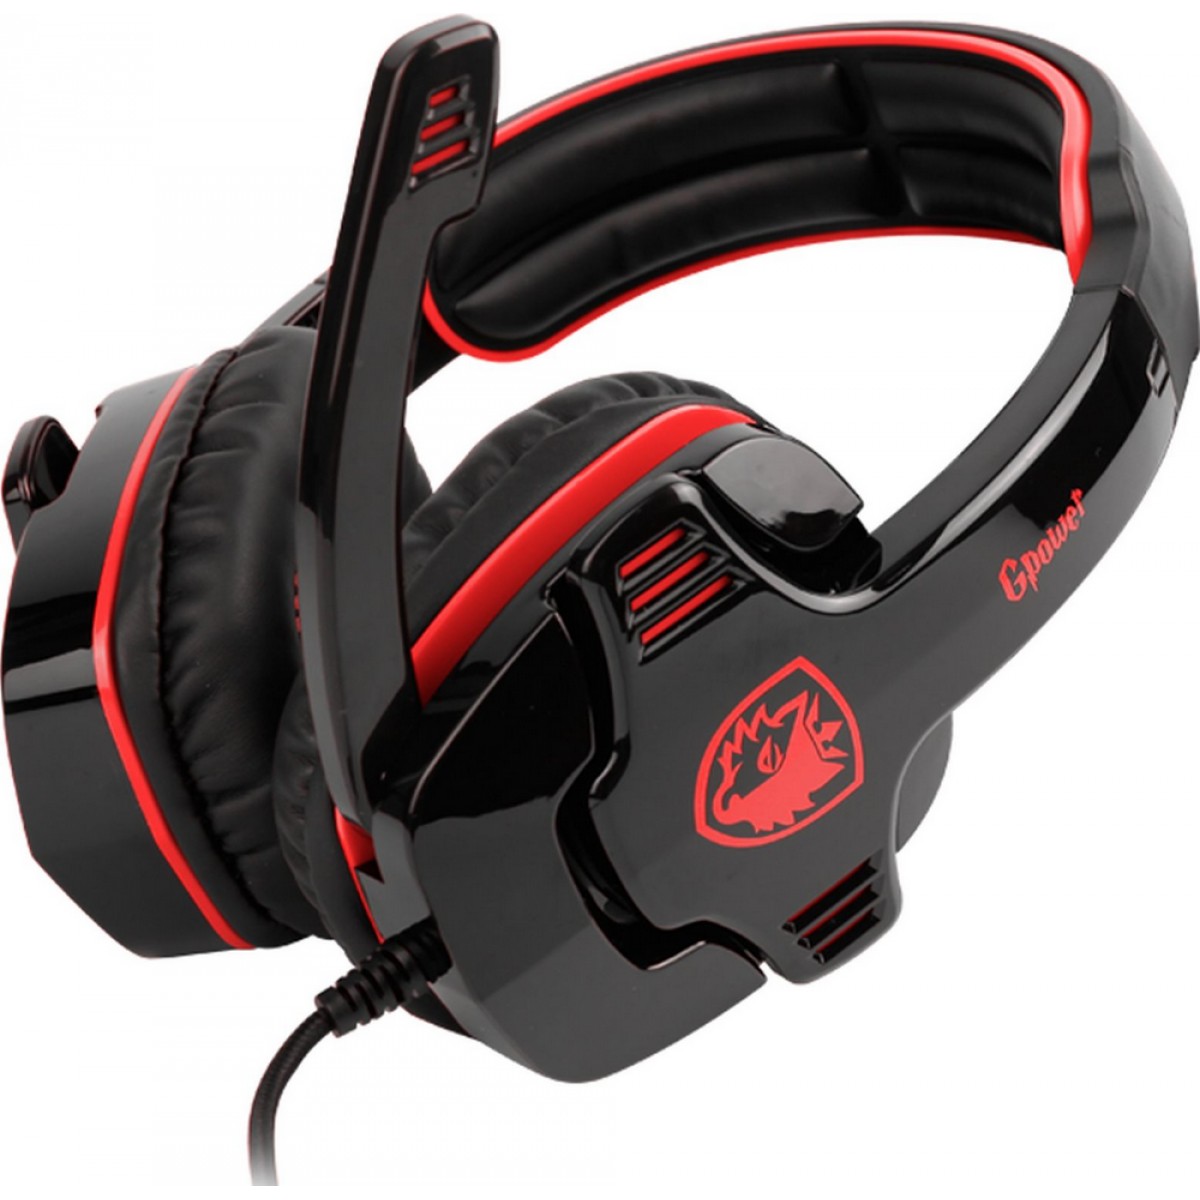 Headset Gamer Sades Sa-708 Gpower, Stereo, Black/Red, SA-708